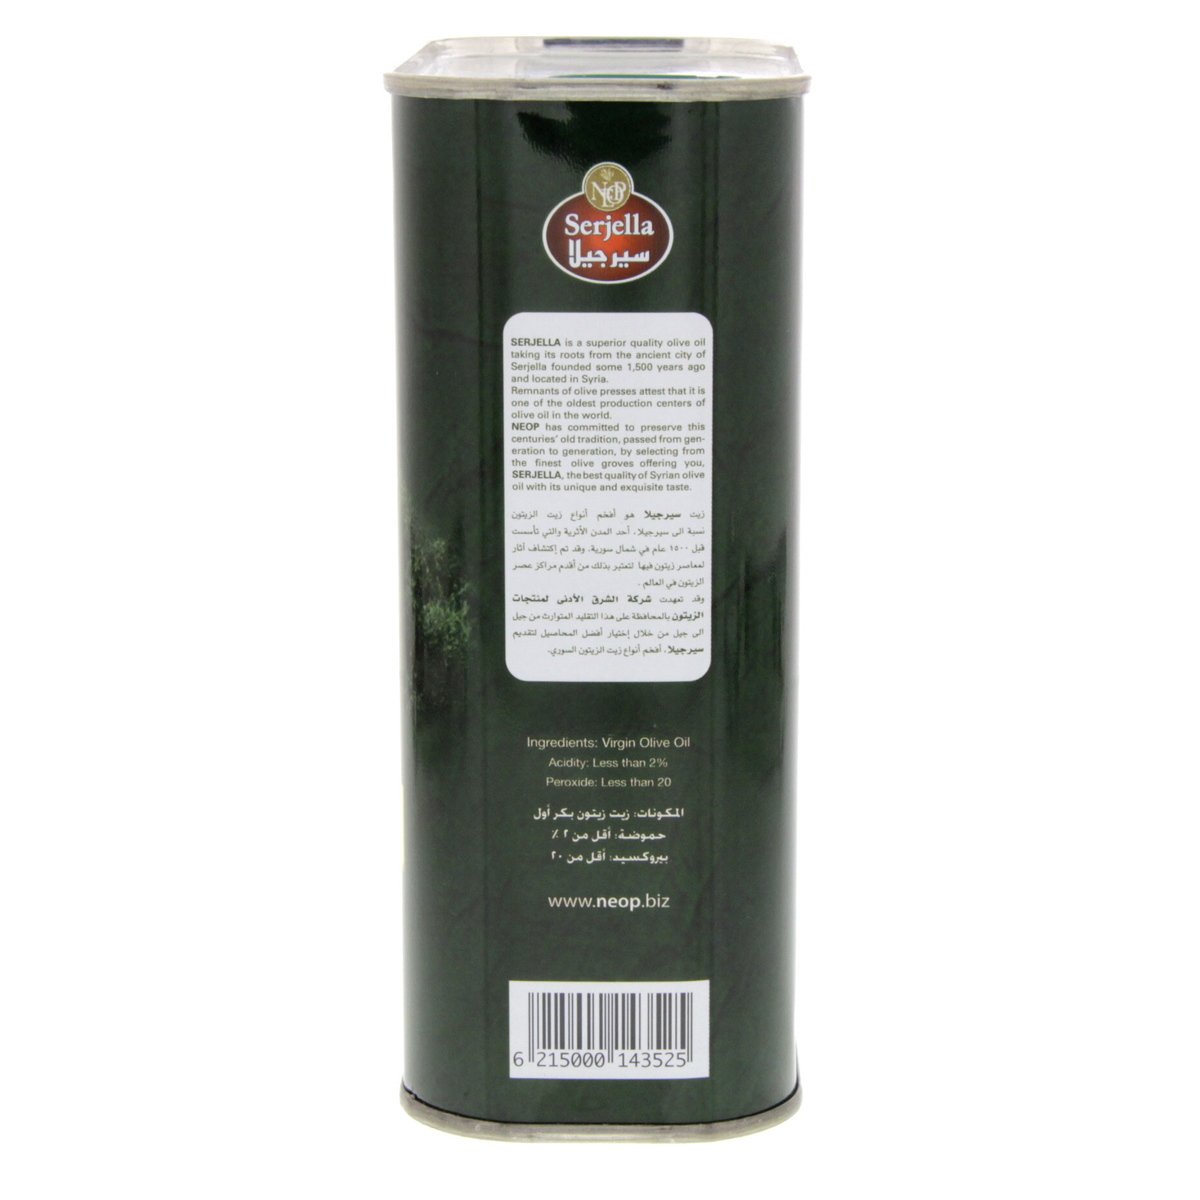 Serjella Virgin Olive Oil 800 ml